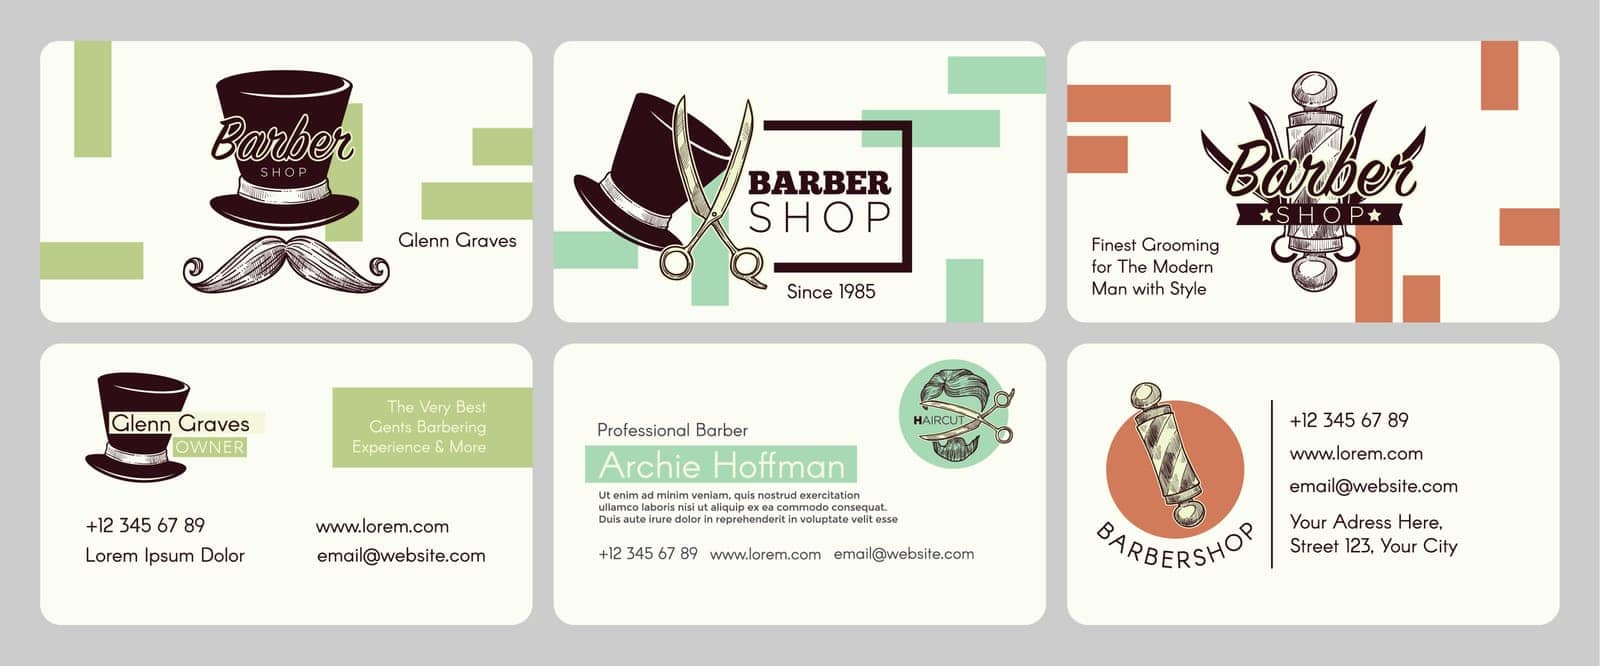 Barber shop company emblem at business card set by Sonulkaster